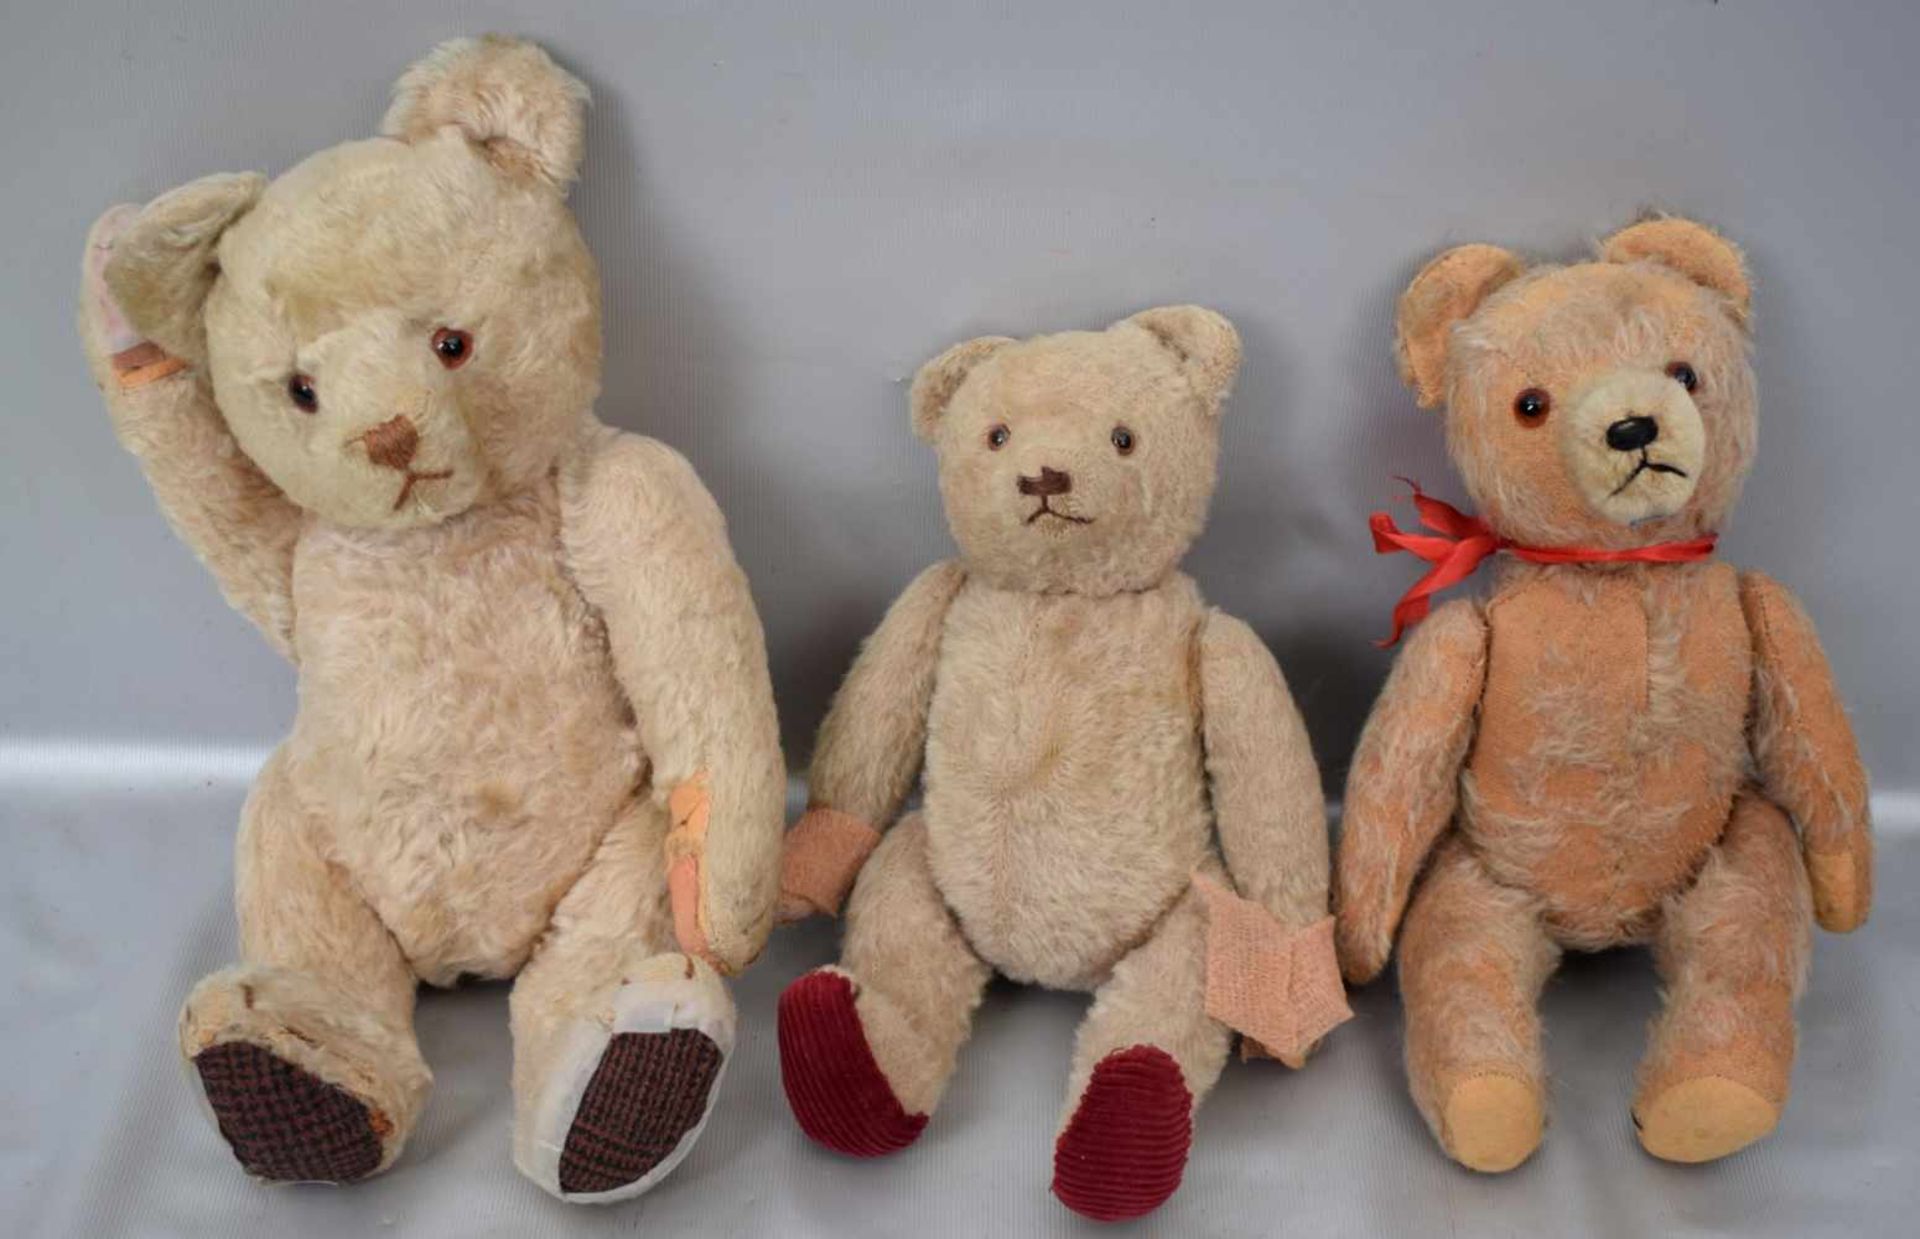 Konvolut drei Teddybärenverschiedene Ausführungen und Größen, bespielt